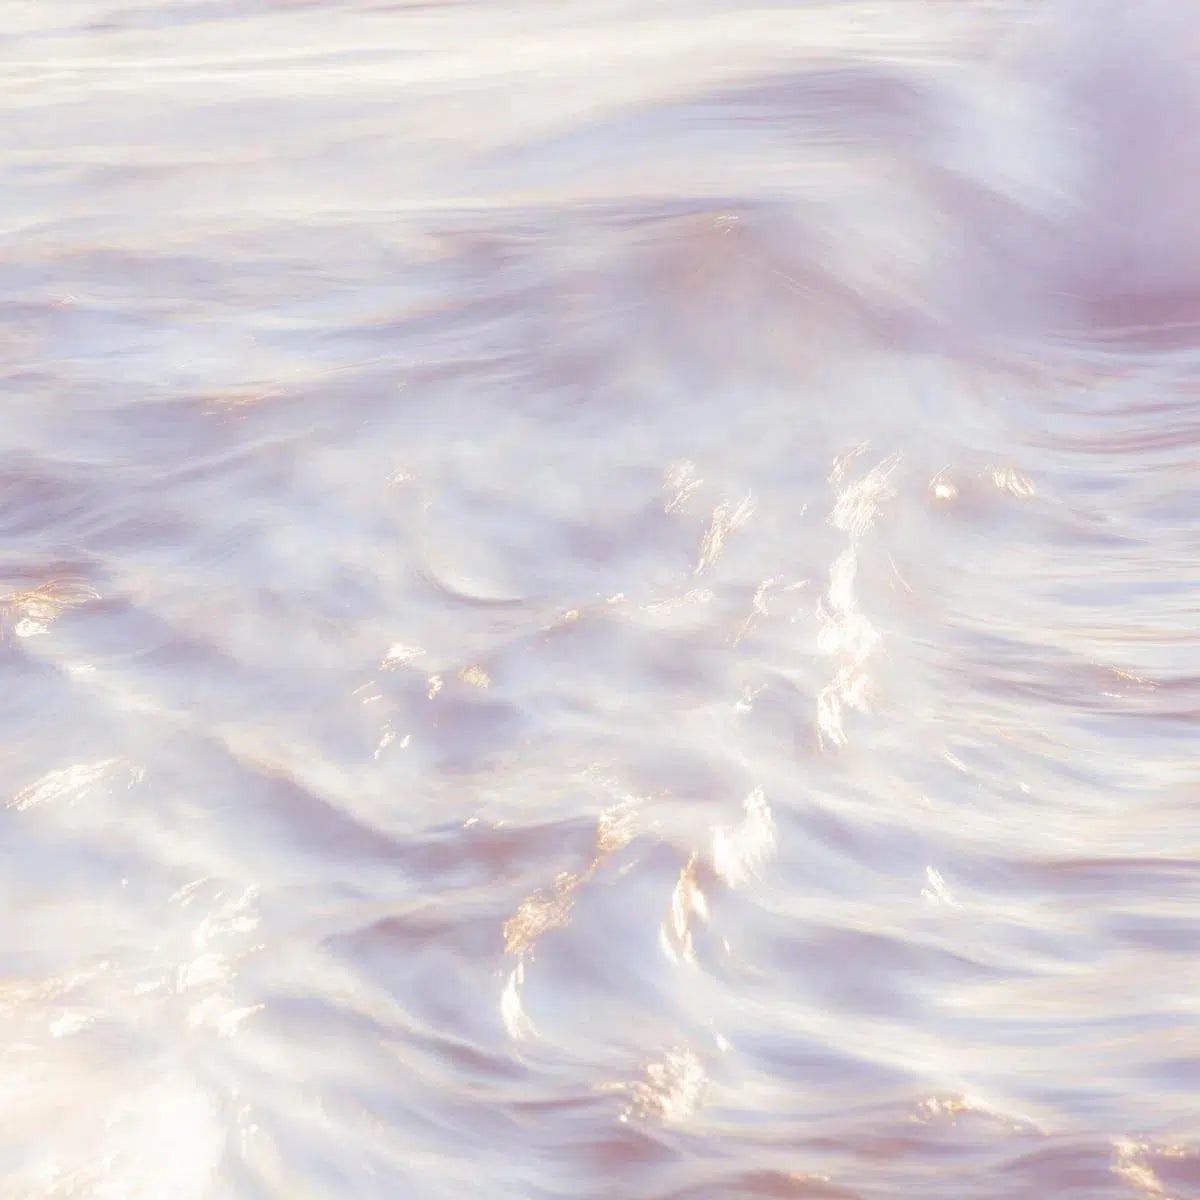 Sakynthos waves 5, by Mats Gustafsson-PurePhoto